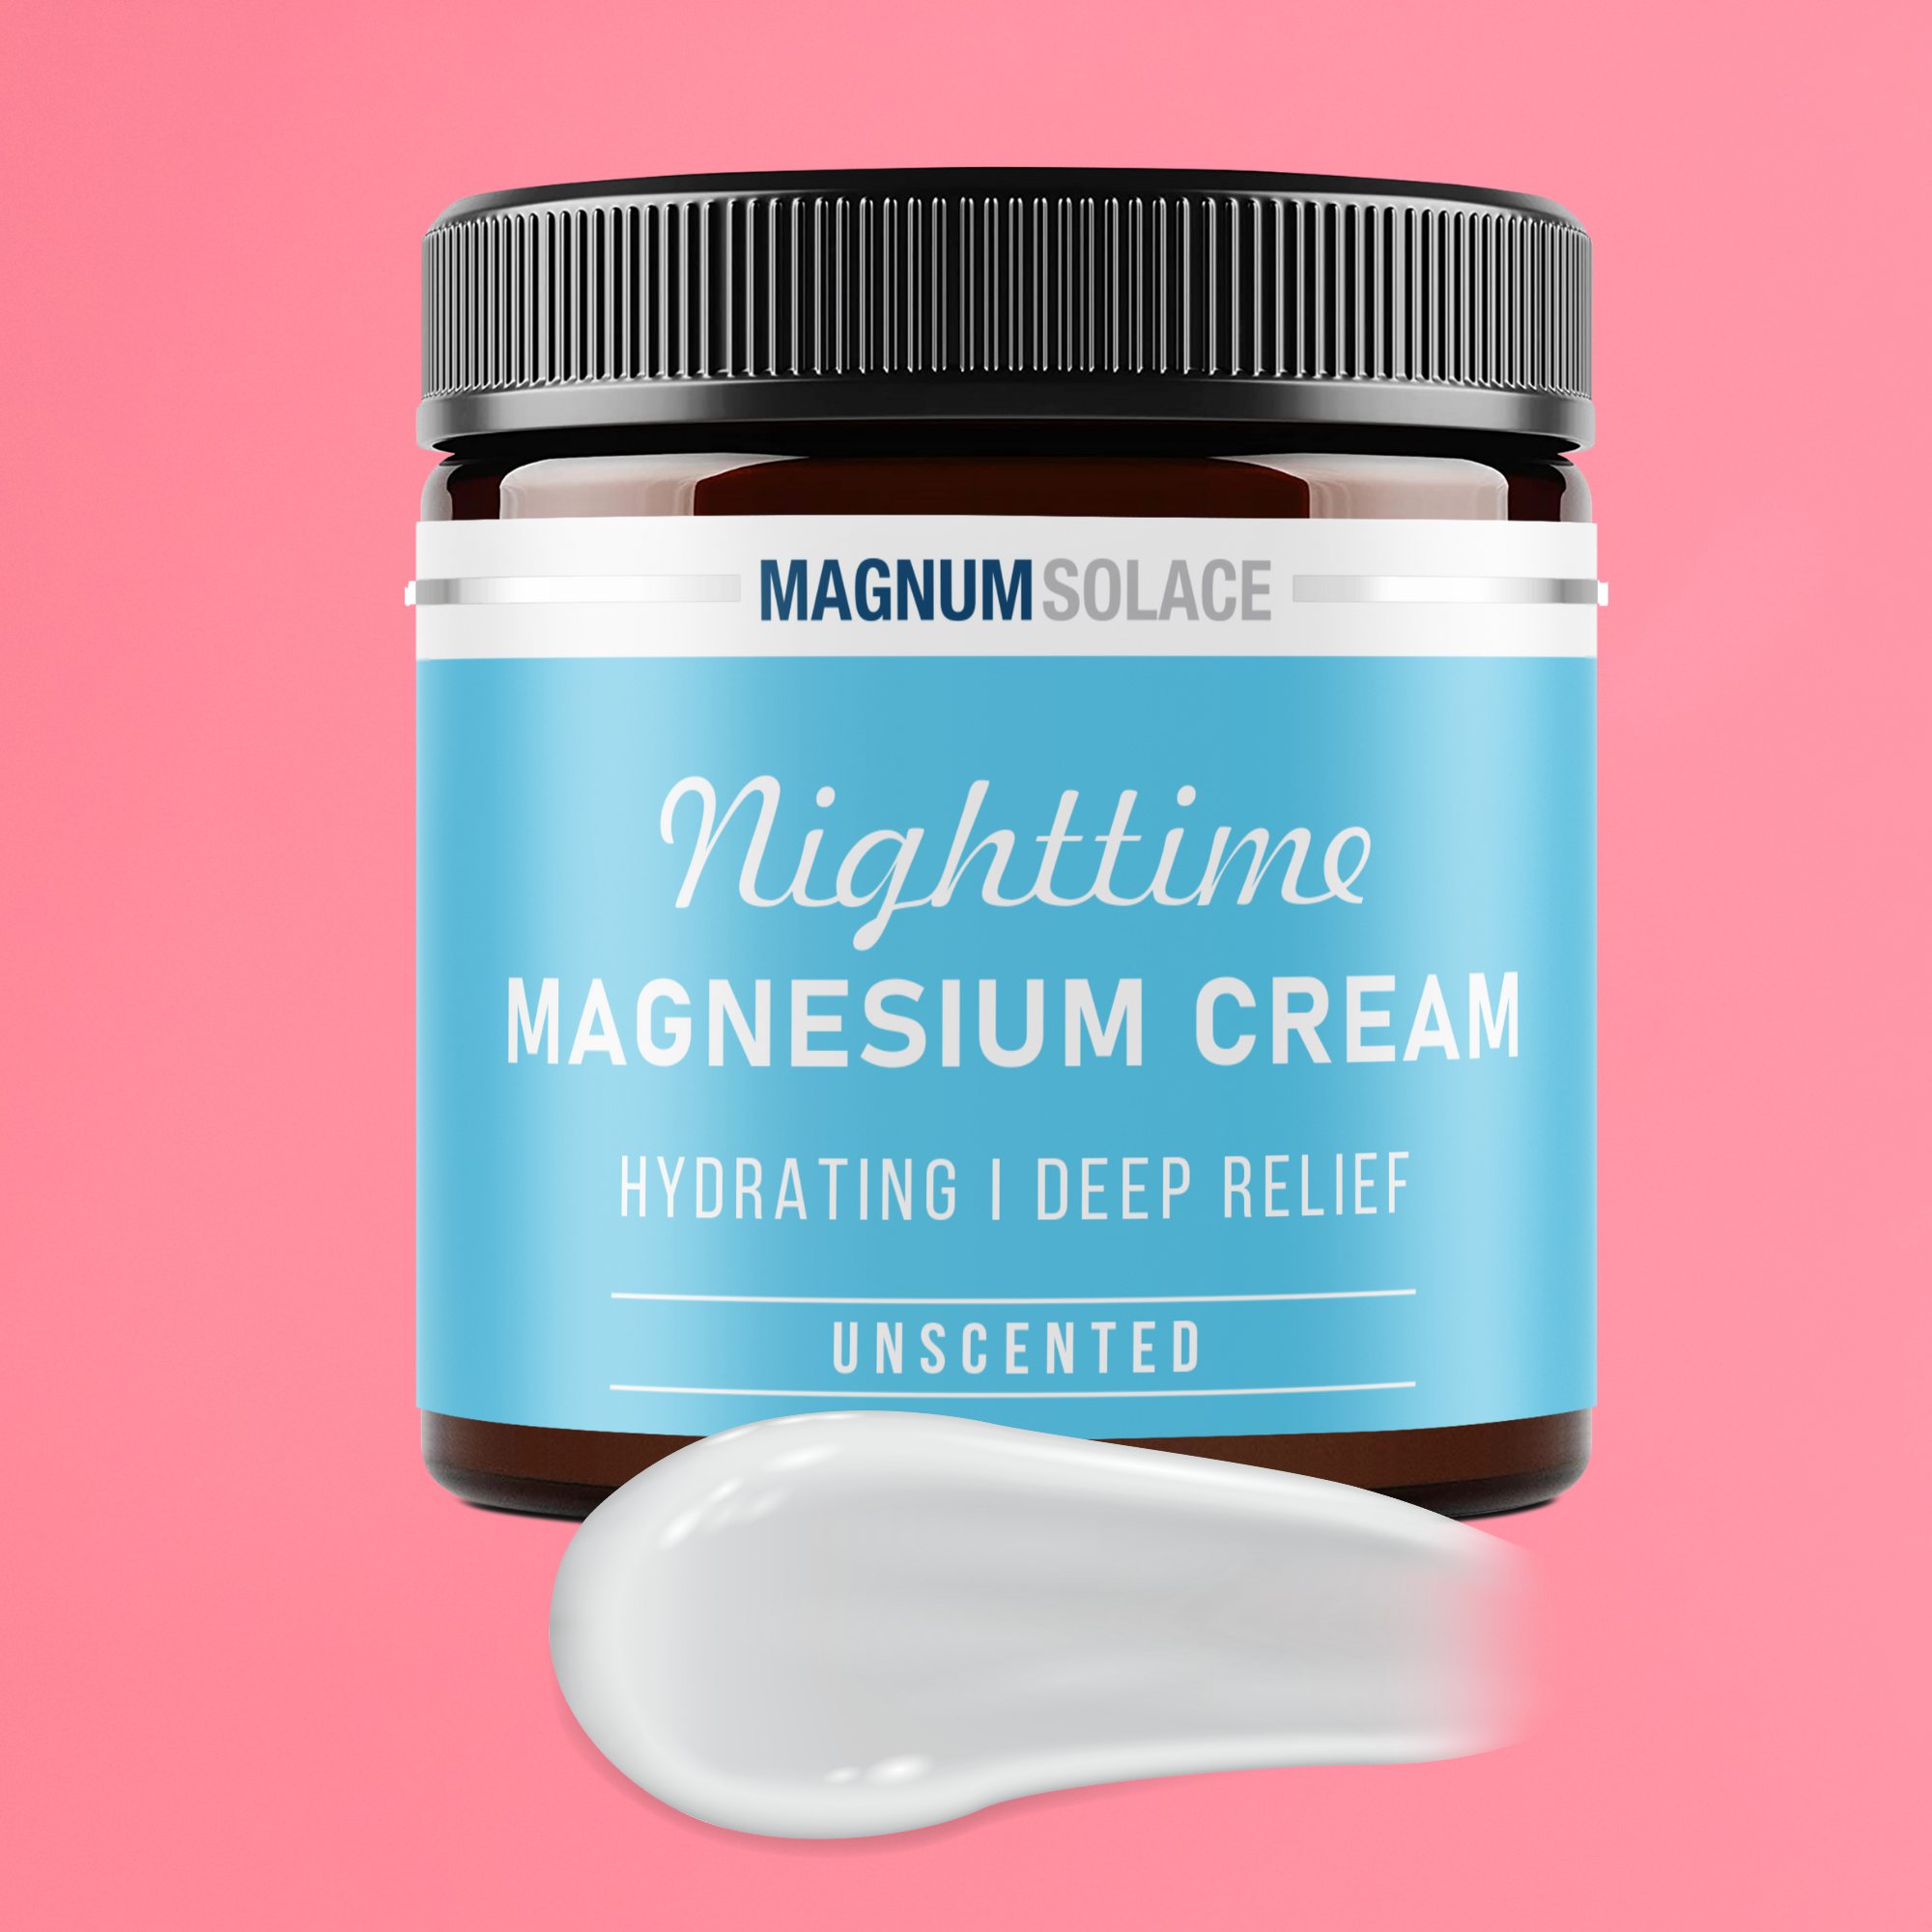 Nighttime Magnesium Cream